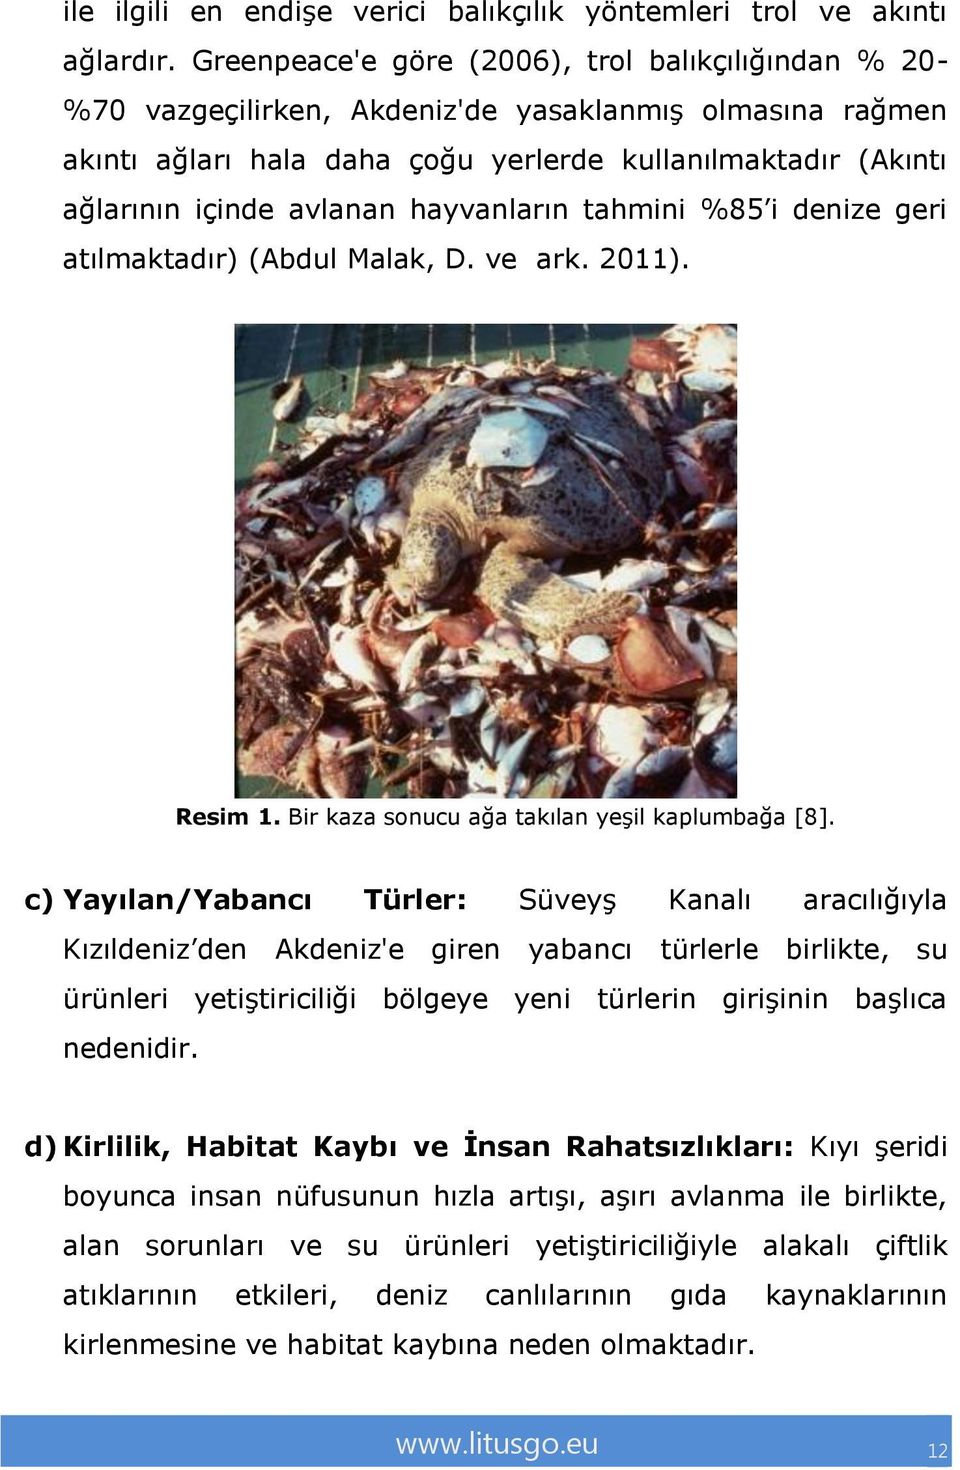 hayvanların tahmini %85 i denize geri atılmaktadır) (Abdul Malak, D. ve ark. 2011). Resim 1. Bir kaza sonucu ağa takılan yeşil kaplumbağa [8].